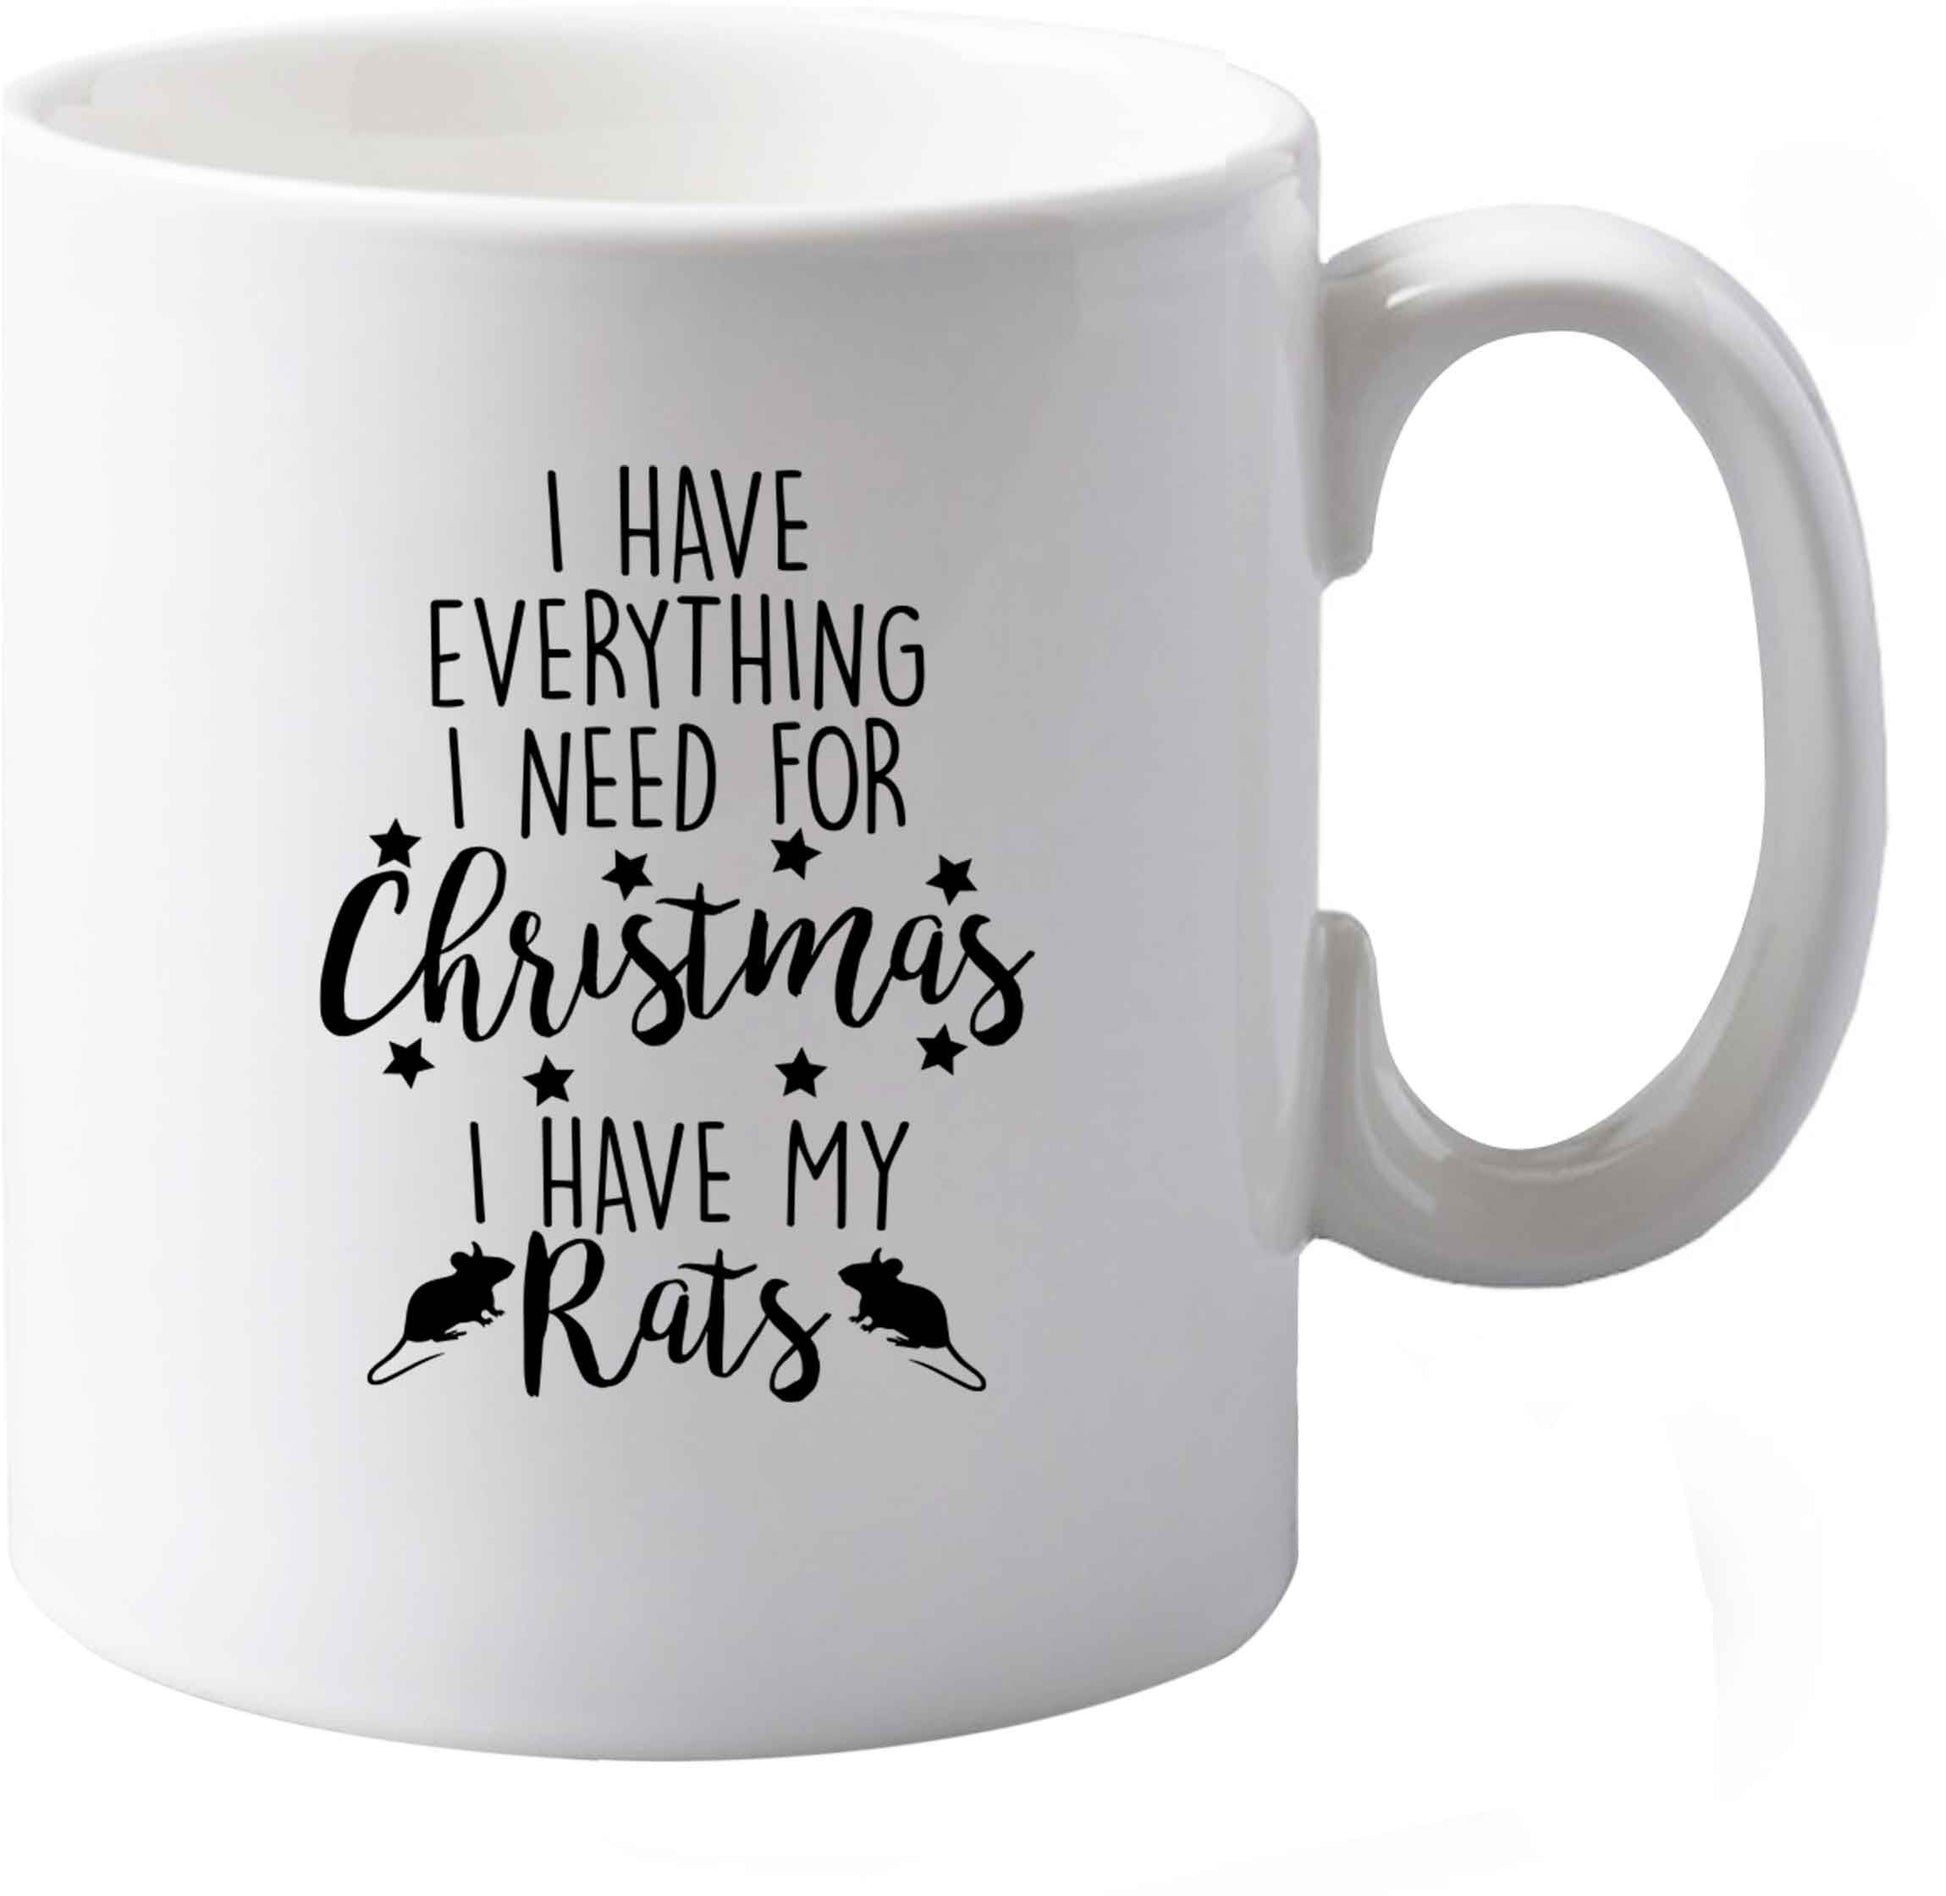 10 oz I have everything I need for Christmas I have my rats ceramic mug both sides